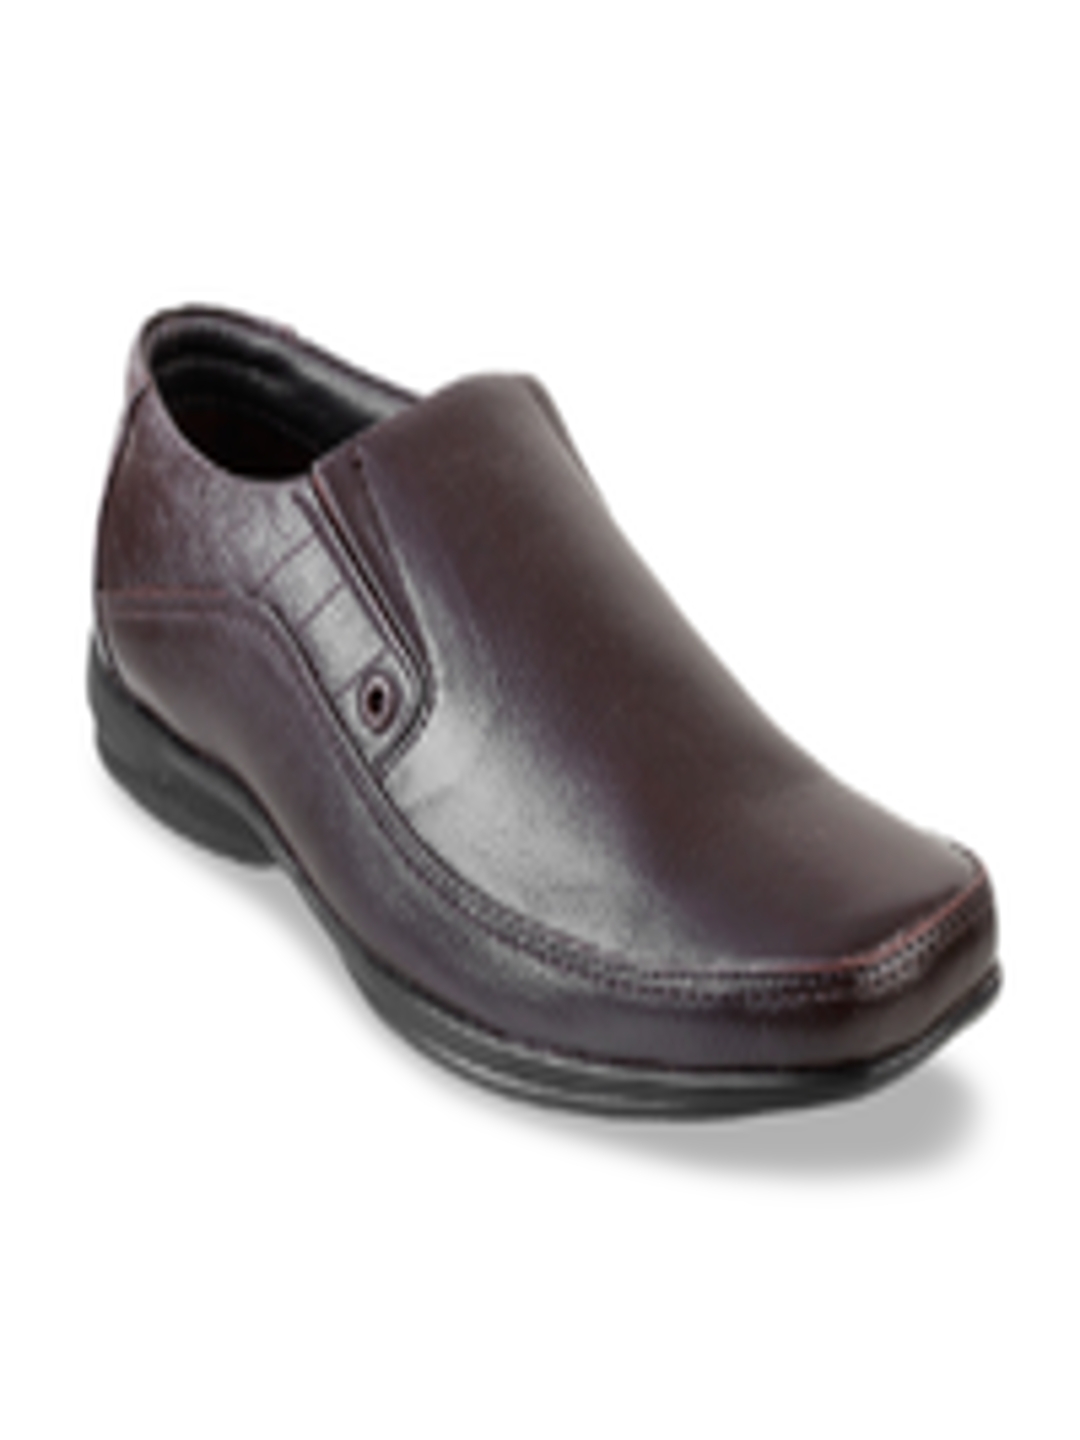 Buy Mochi Men Brown Solid Leather Slip On Shoes - Formal Shoes for Men ...